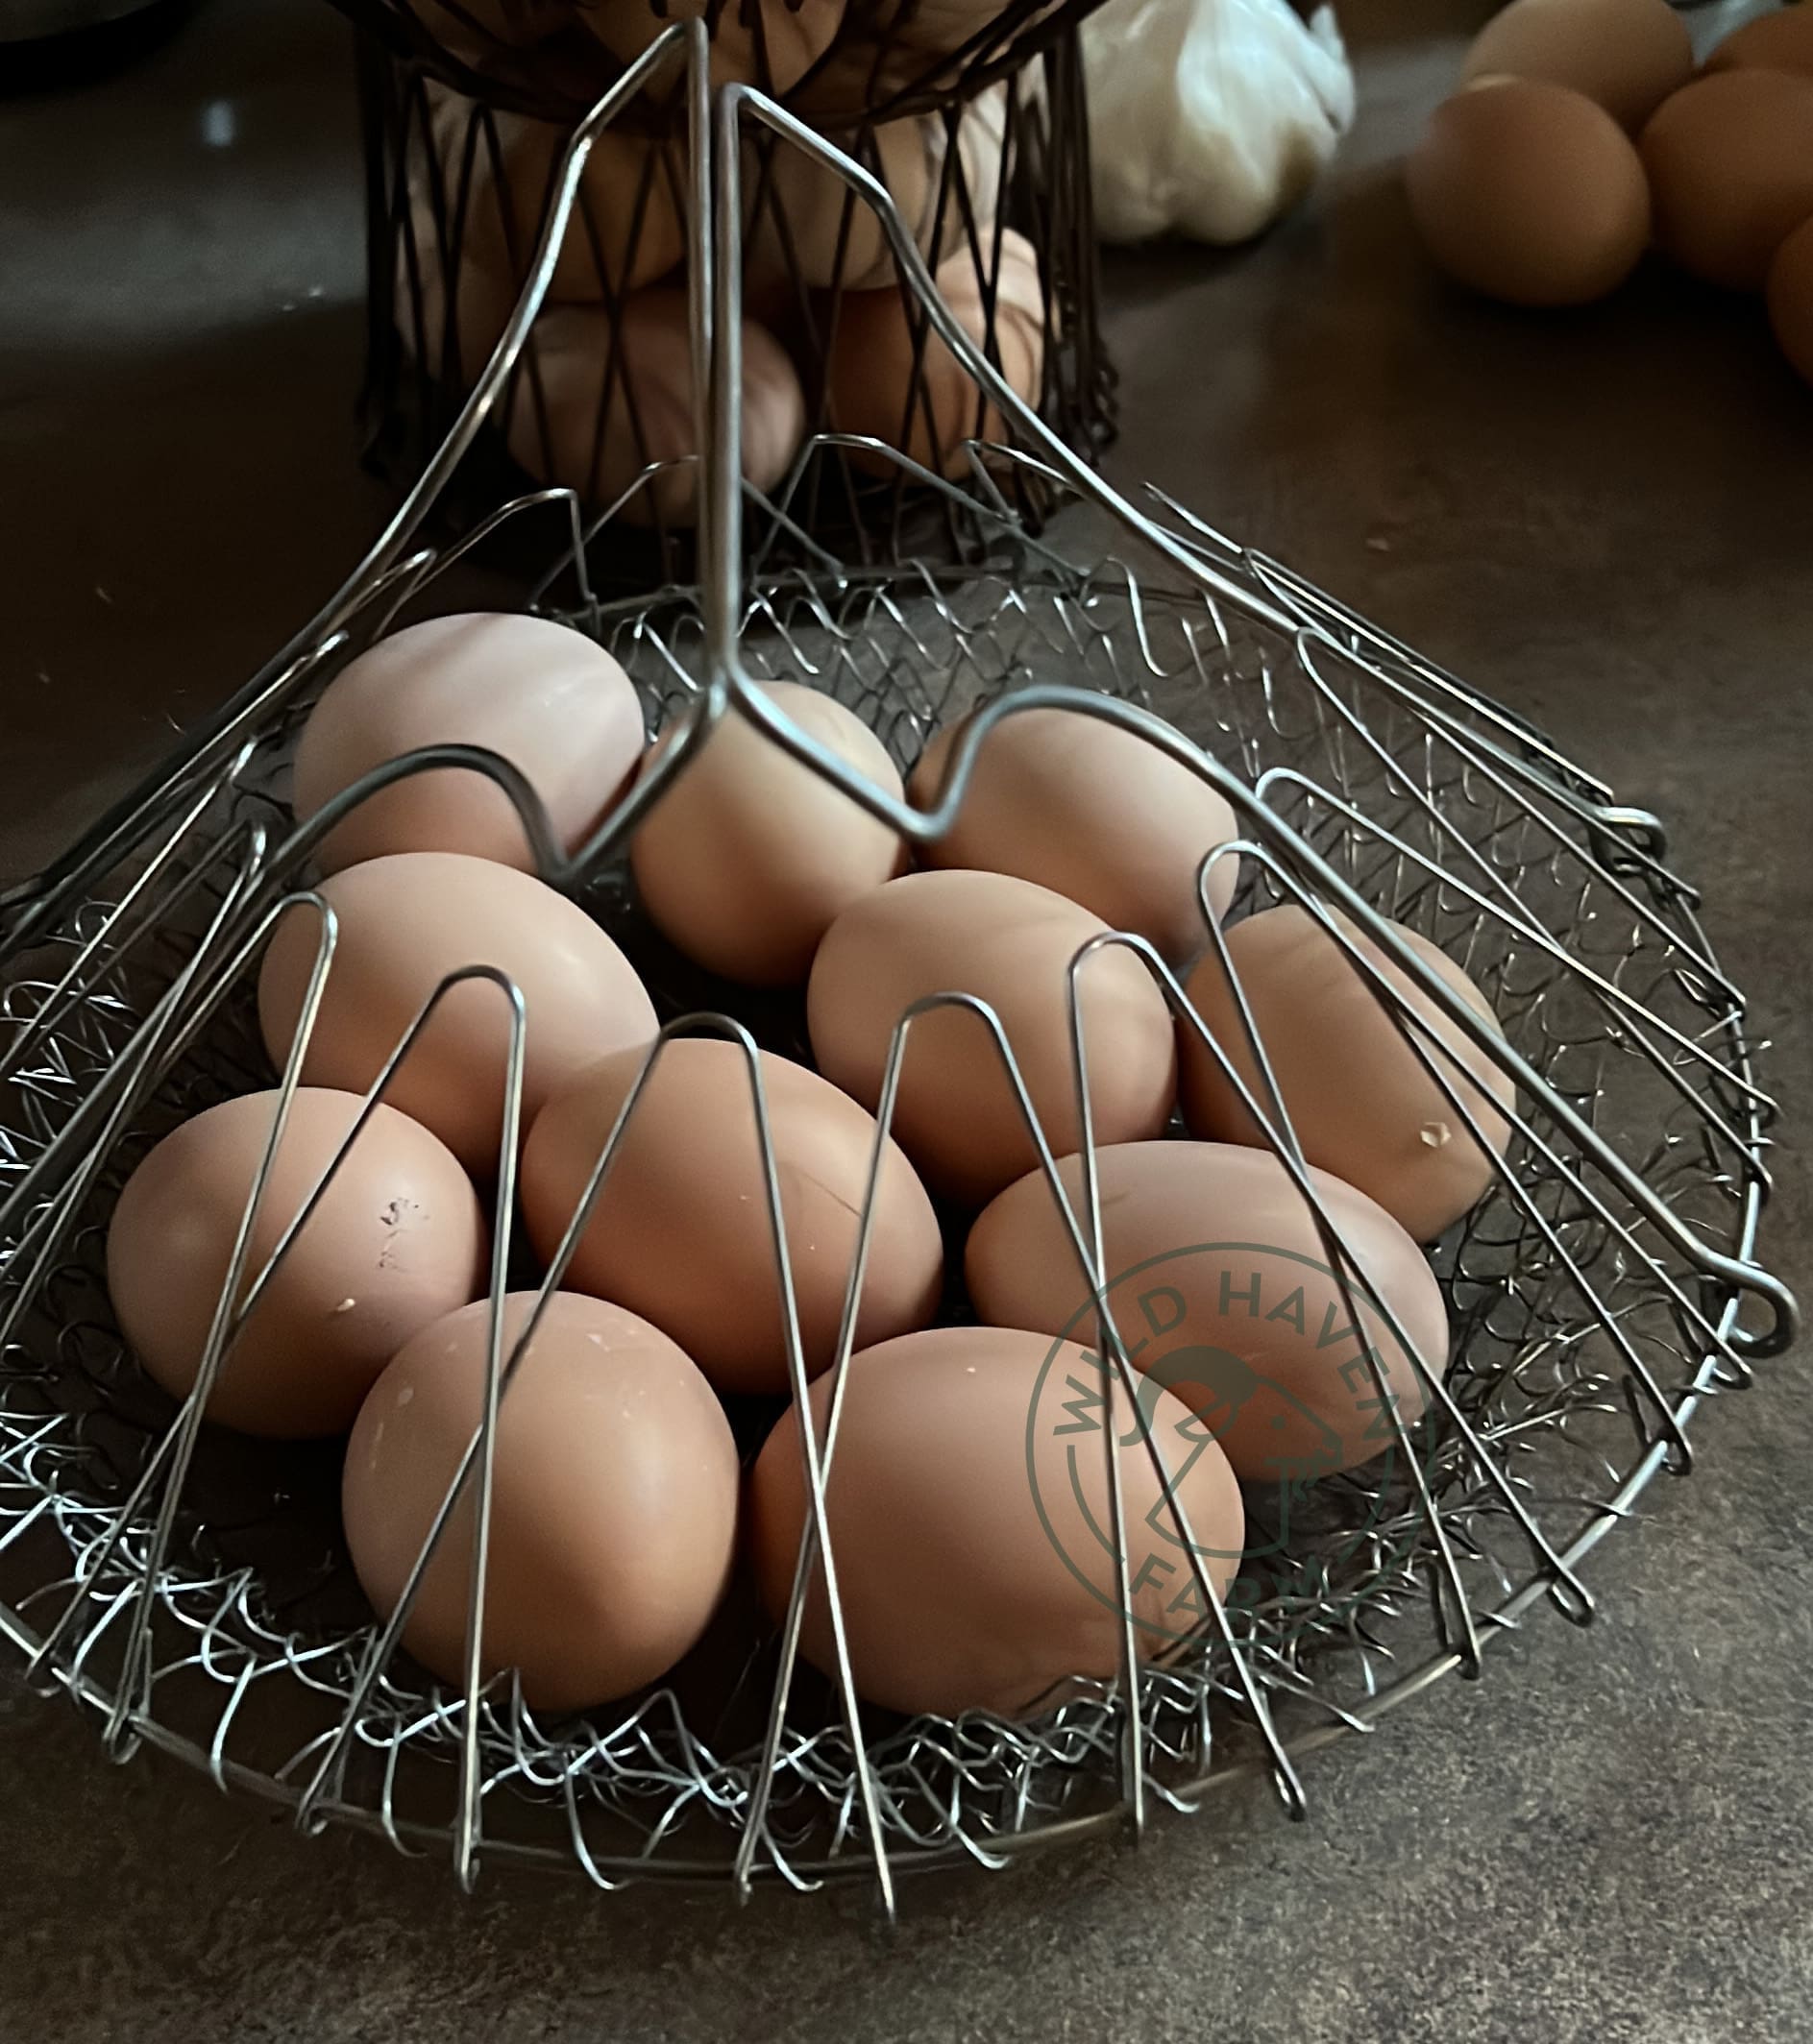 chicken eggs in wire basket